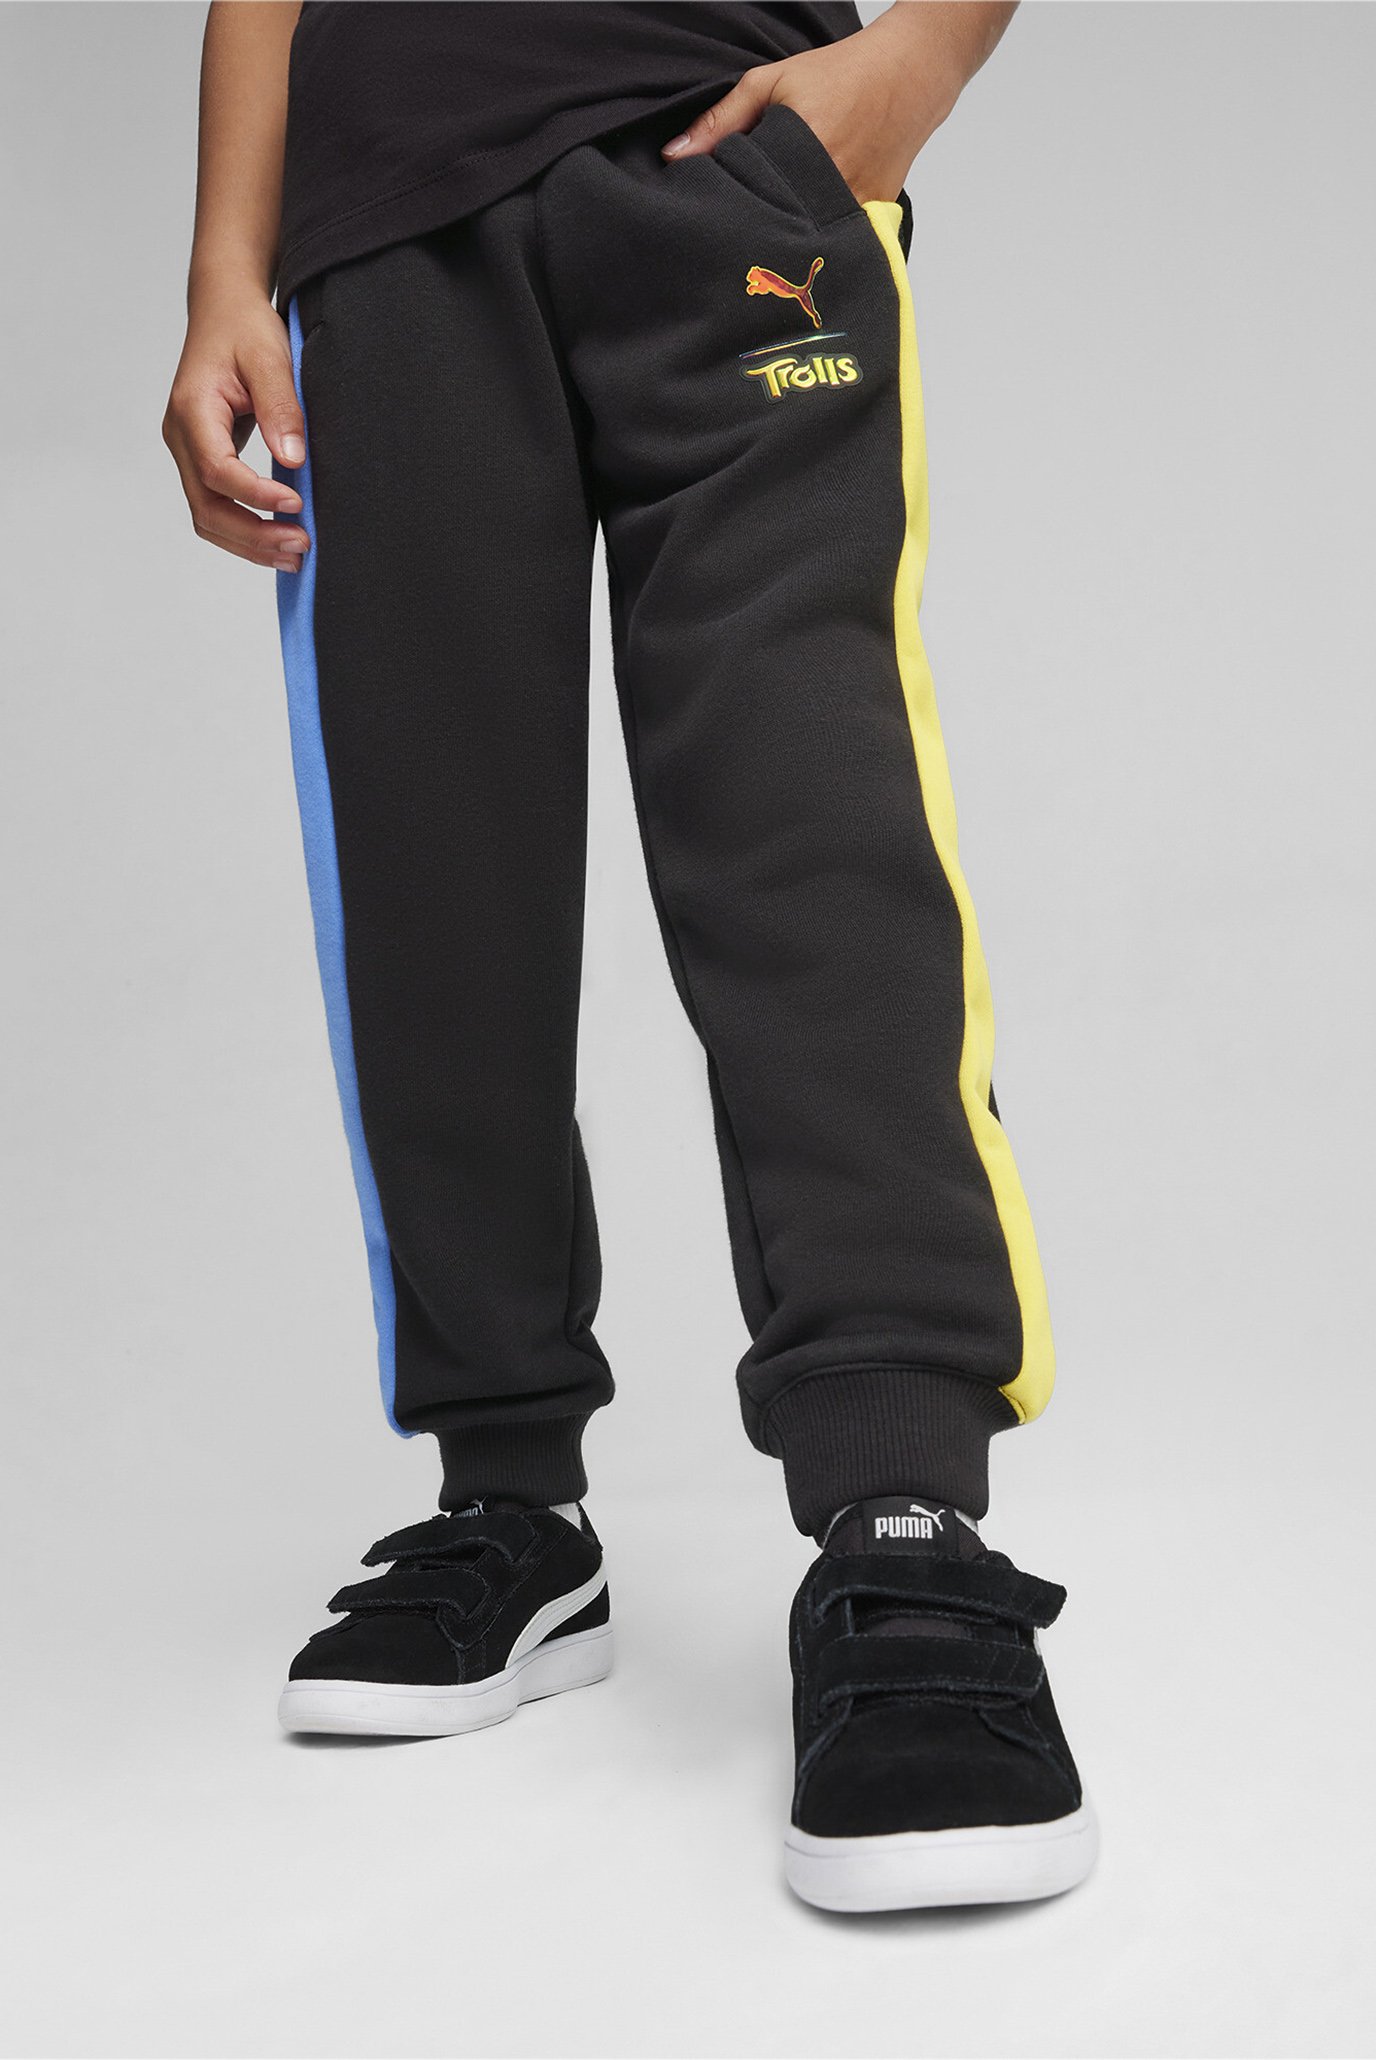 Дитячі чорні спортивні штани PUMA x TROLLS Kids' T7 Track Pants 1